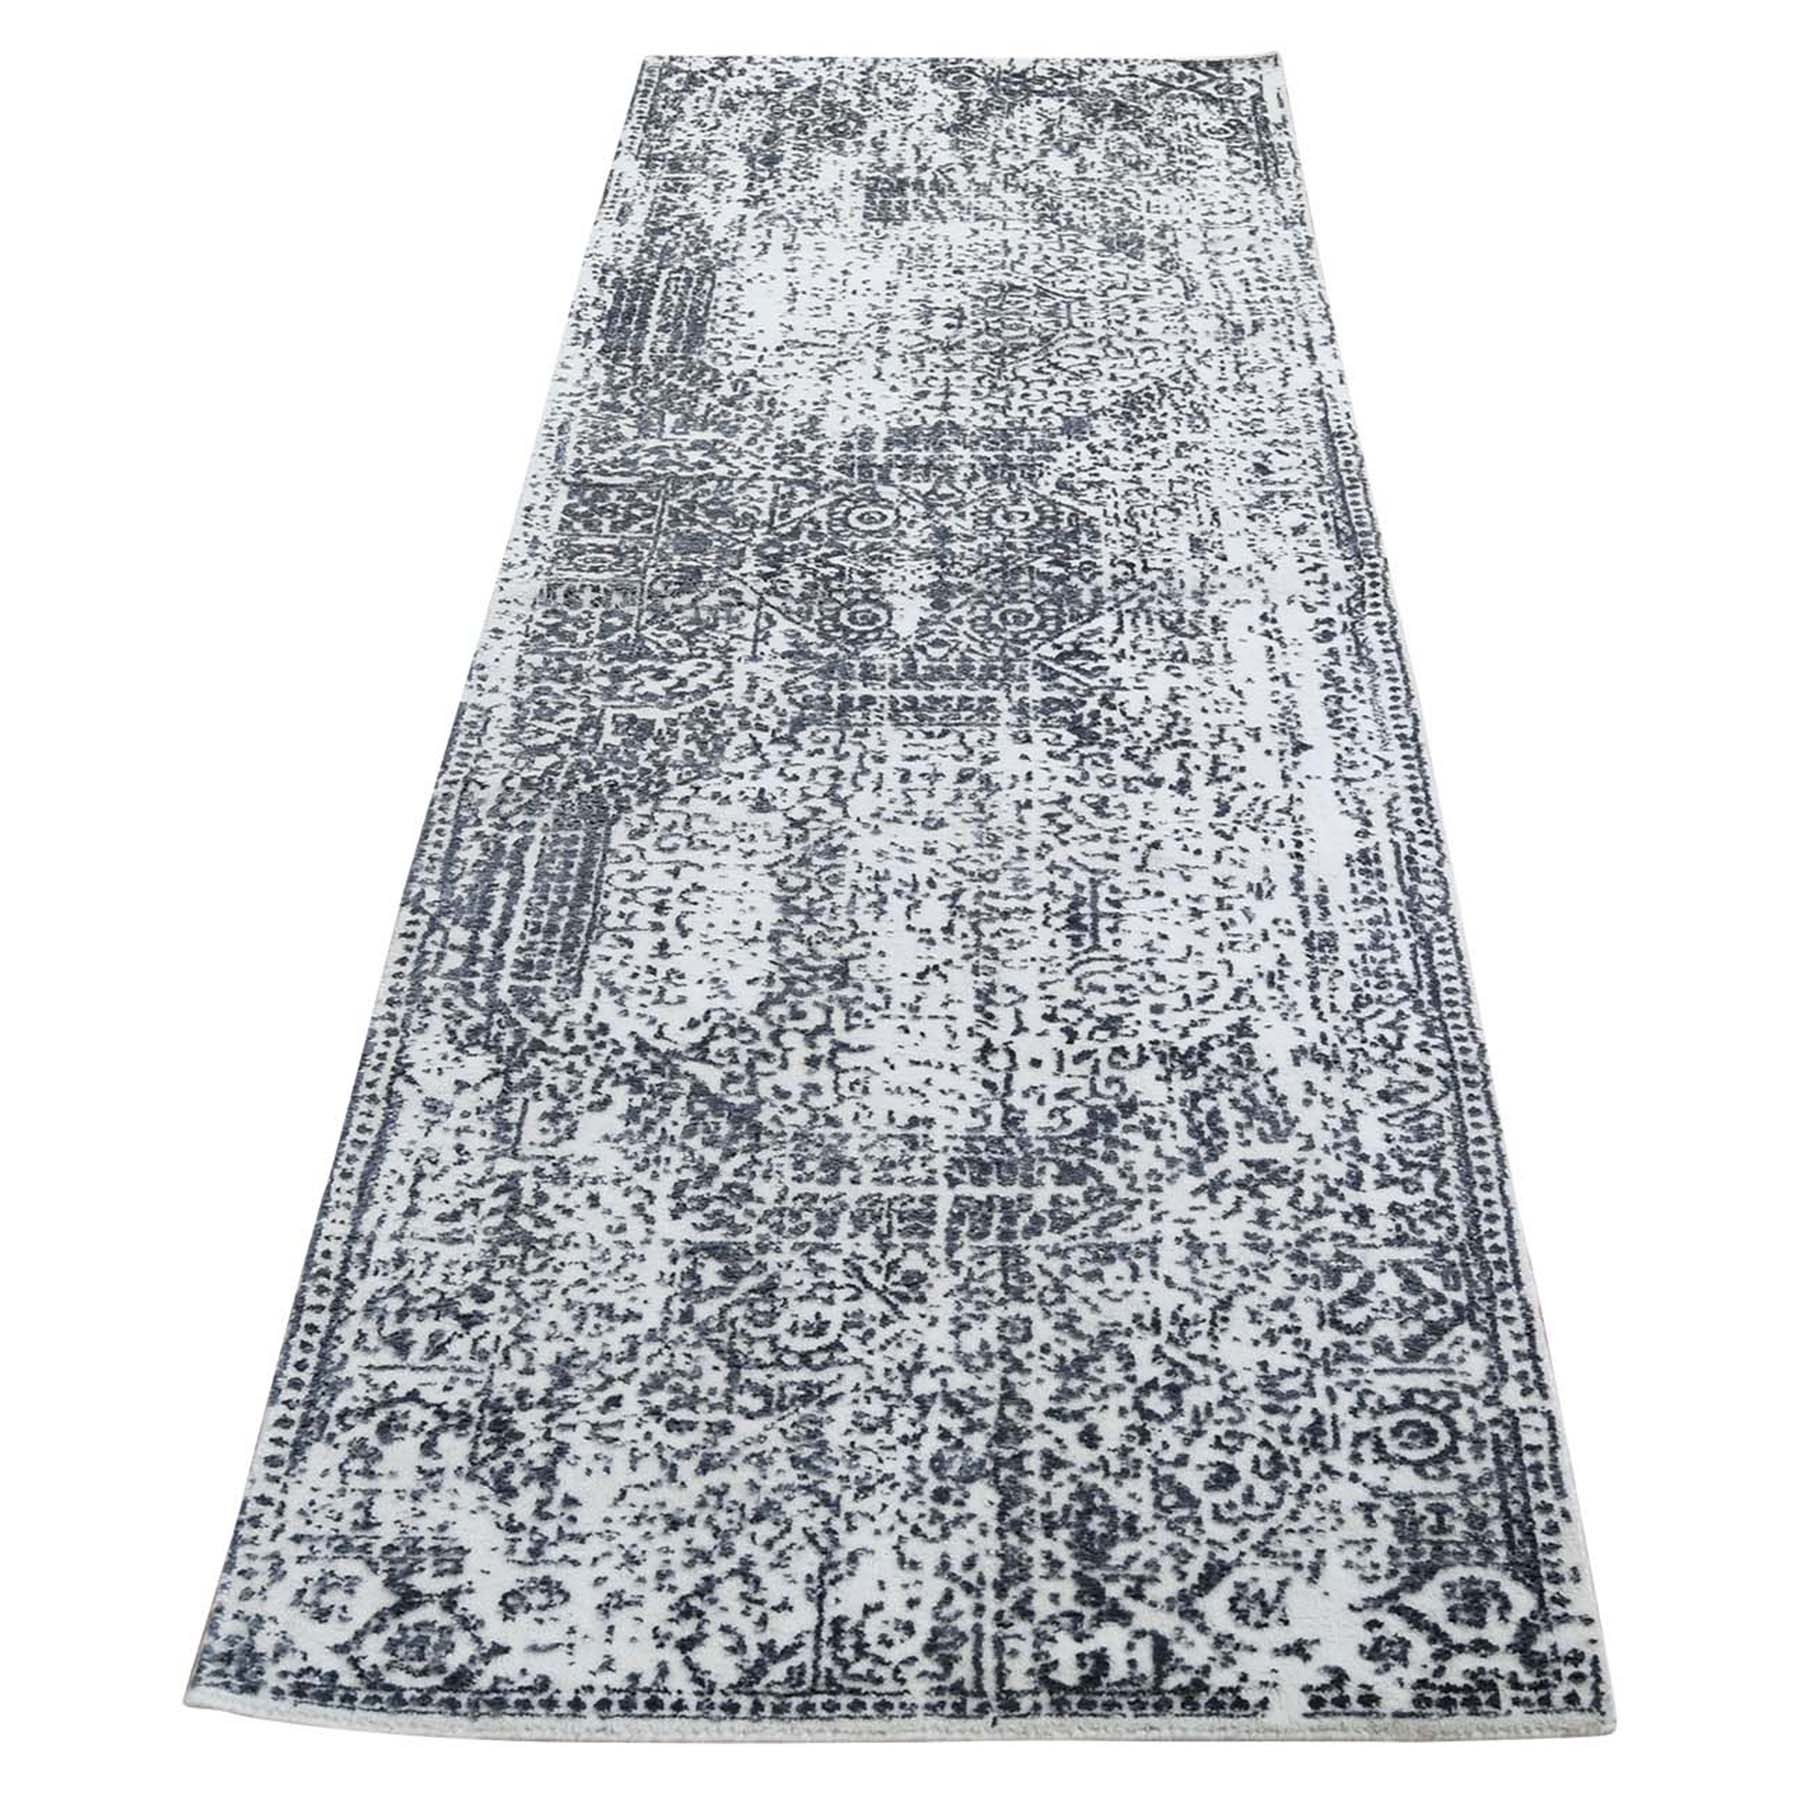 2'5"x7'9" Ivory Hand-Loomed Mamluk Design Runner Oriental Rug 